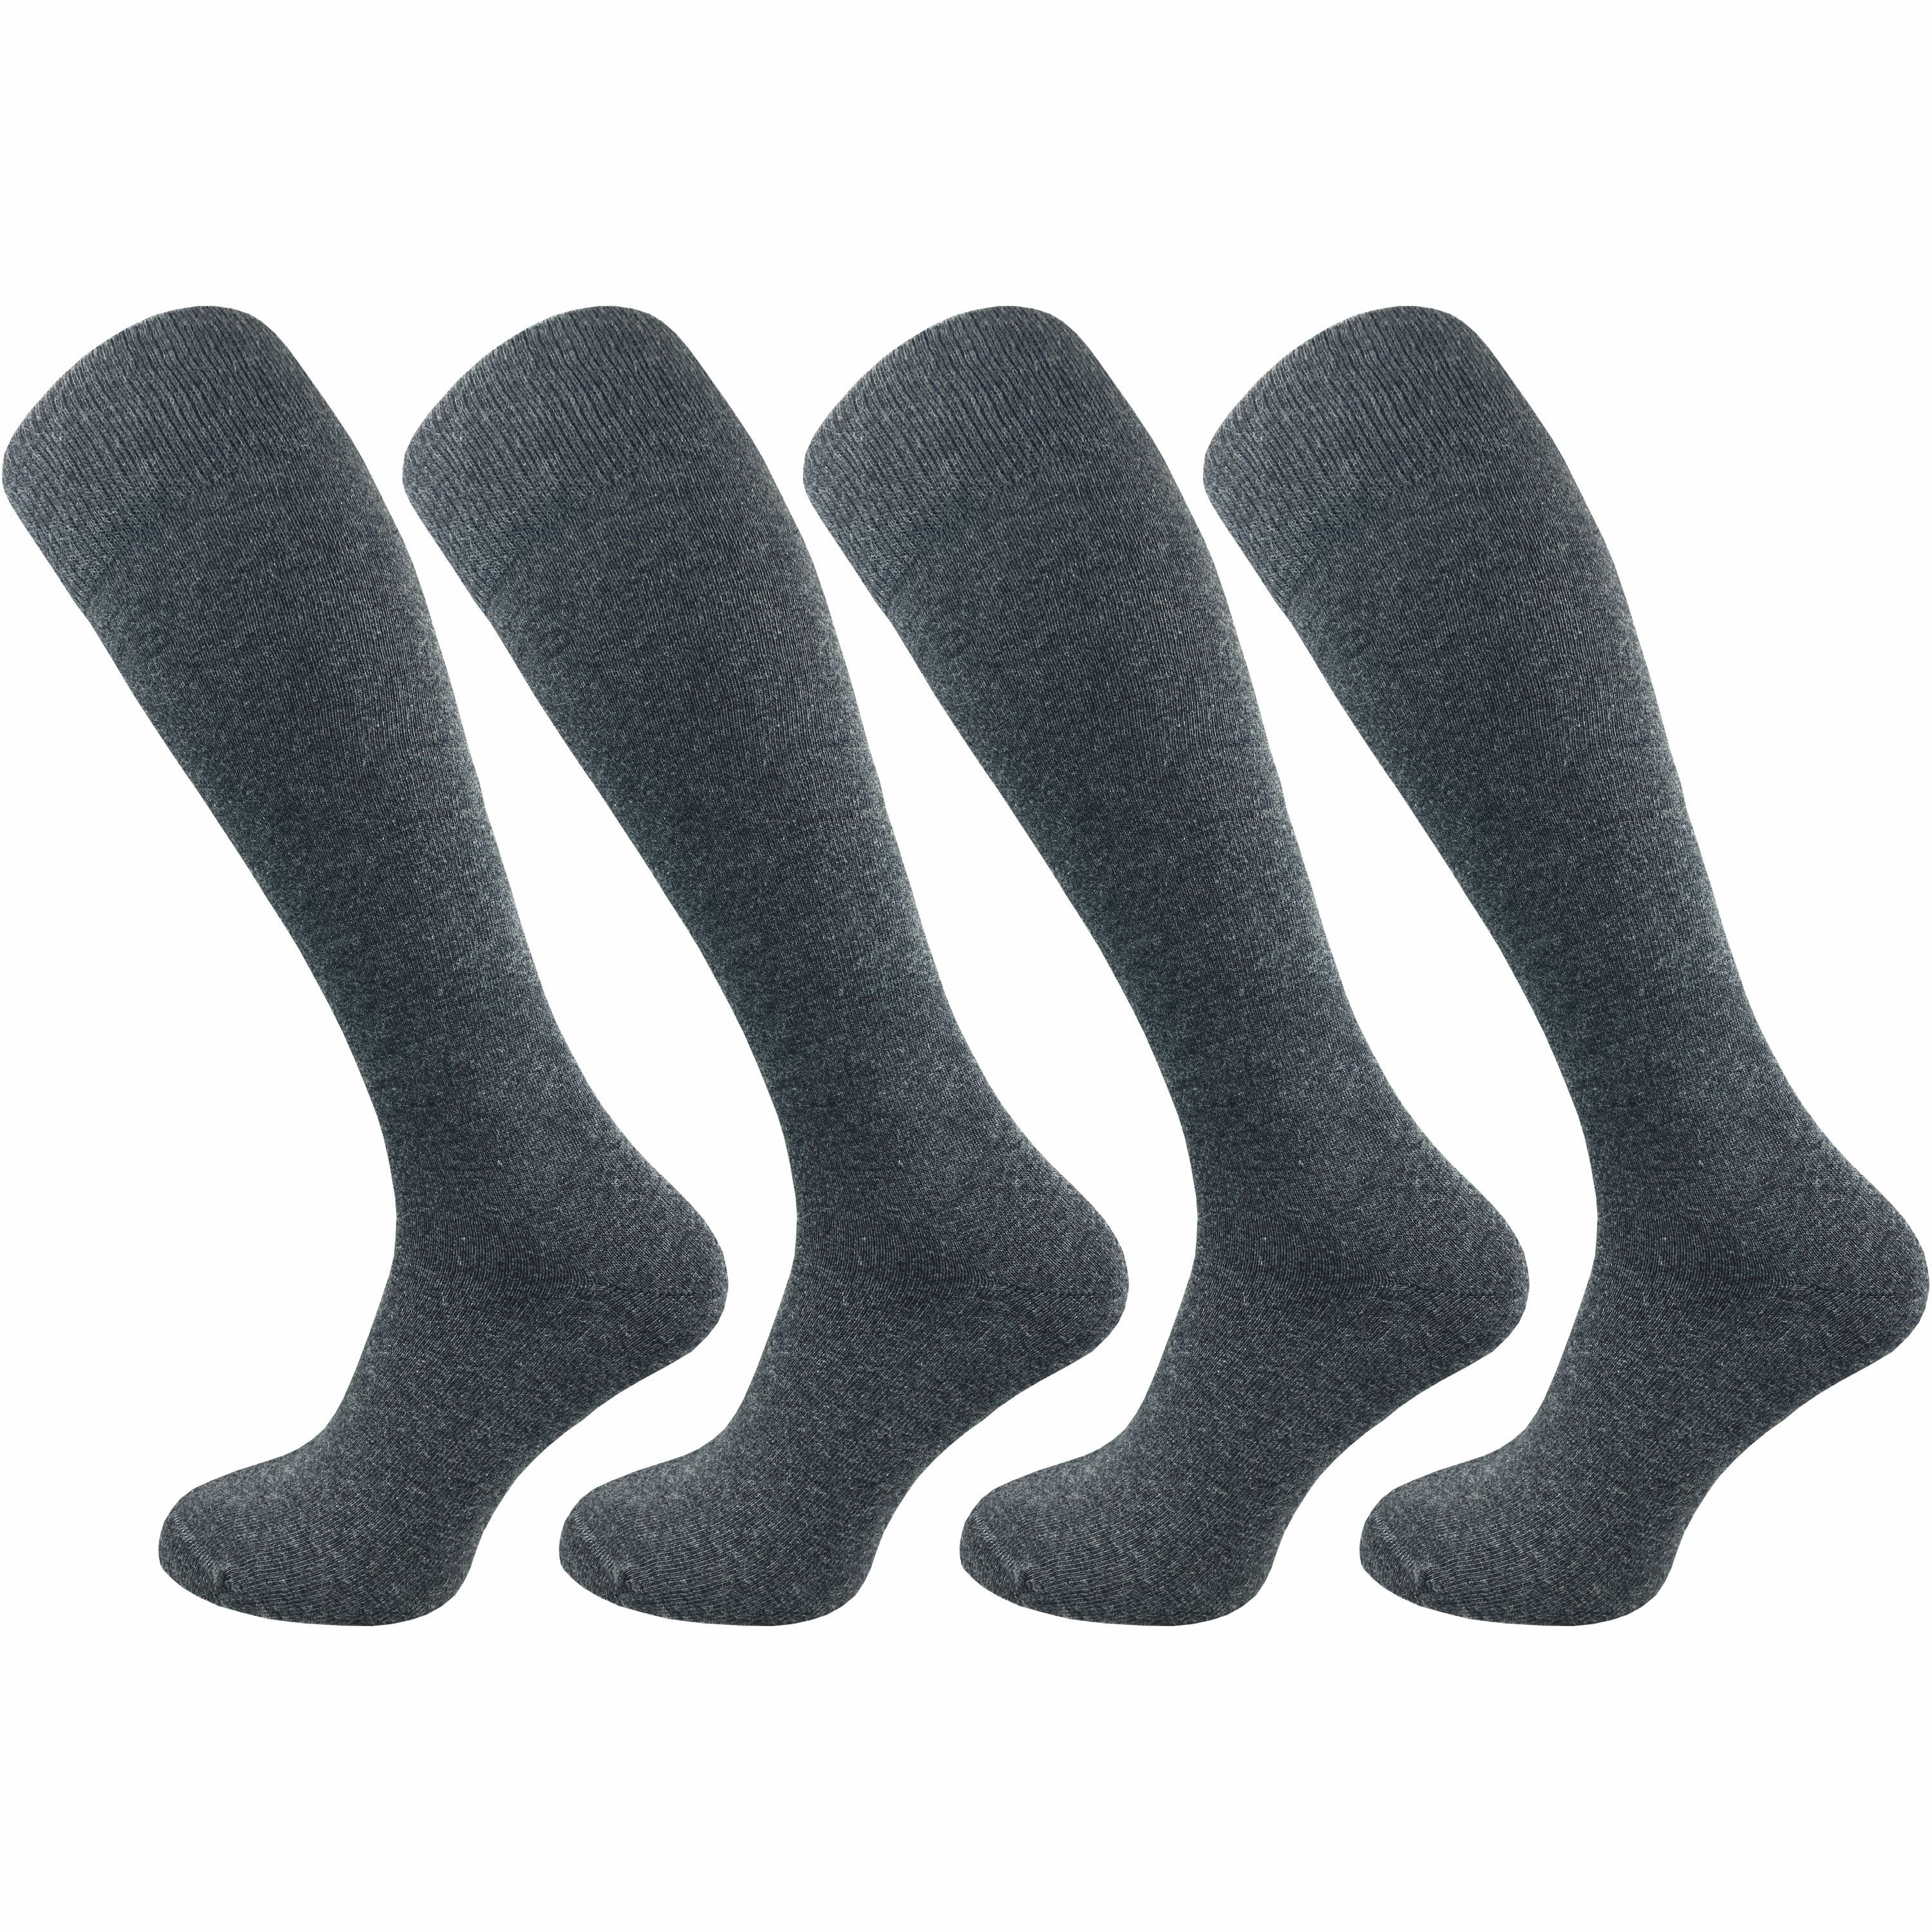 Naht mit weich Herren einschneidet Kniestrümpfe Baumwolle & nicht Lange extra der - (4 GAWILO aus Paar) für drückende ohne speziellem Socken Komfortbund, grau